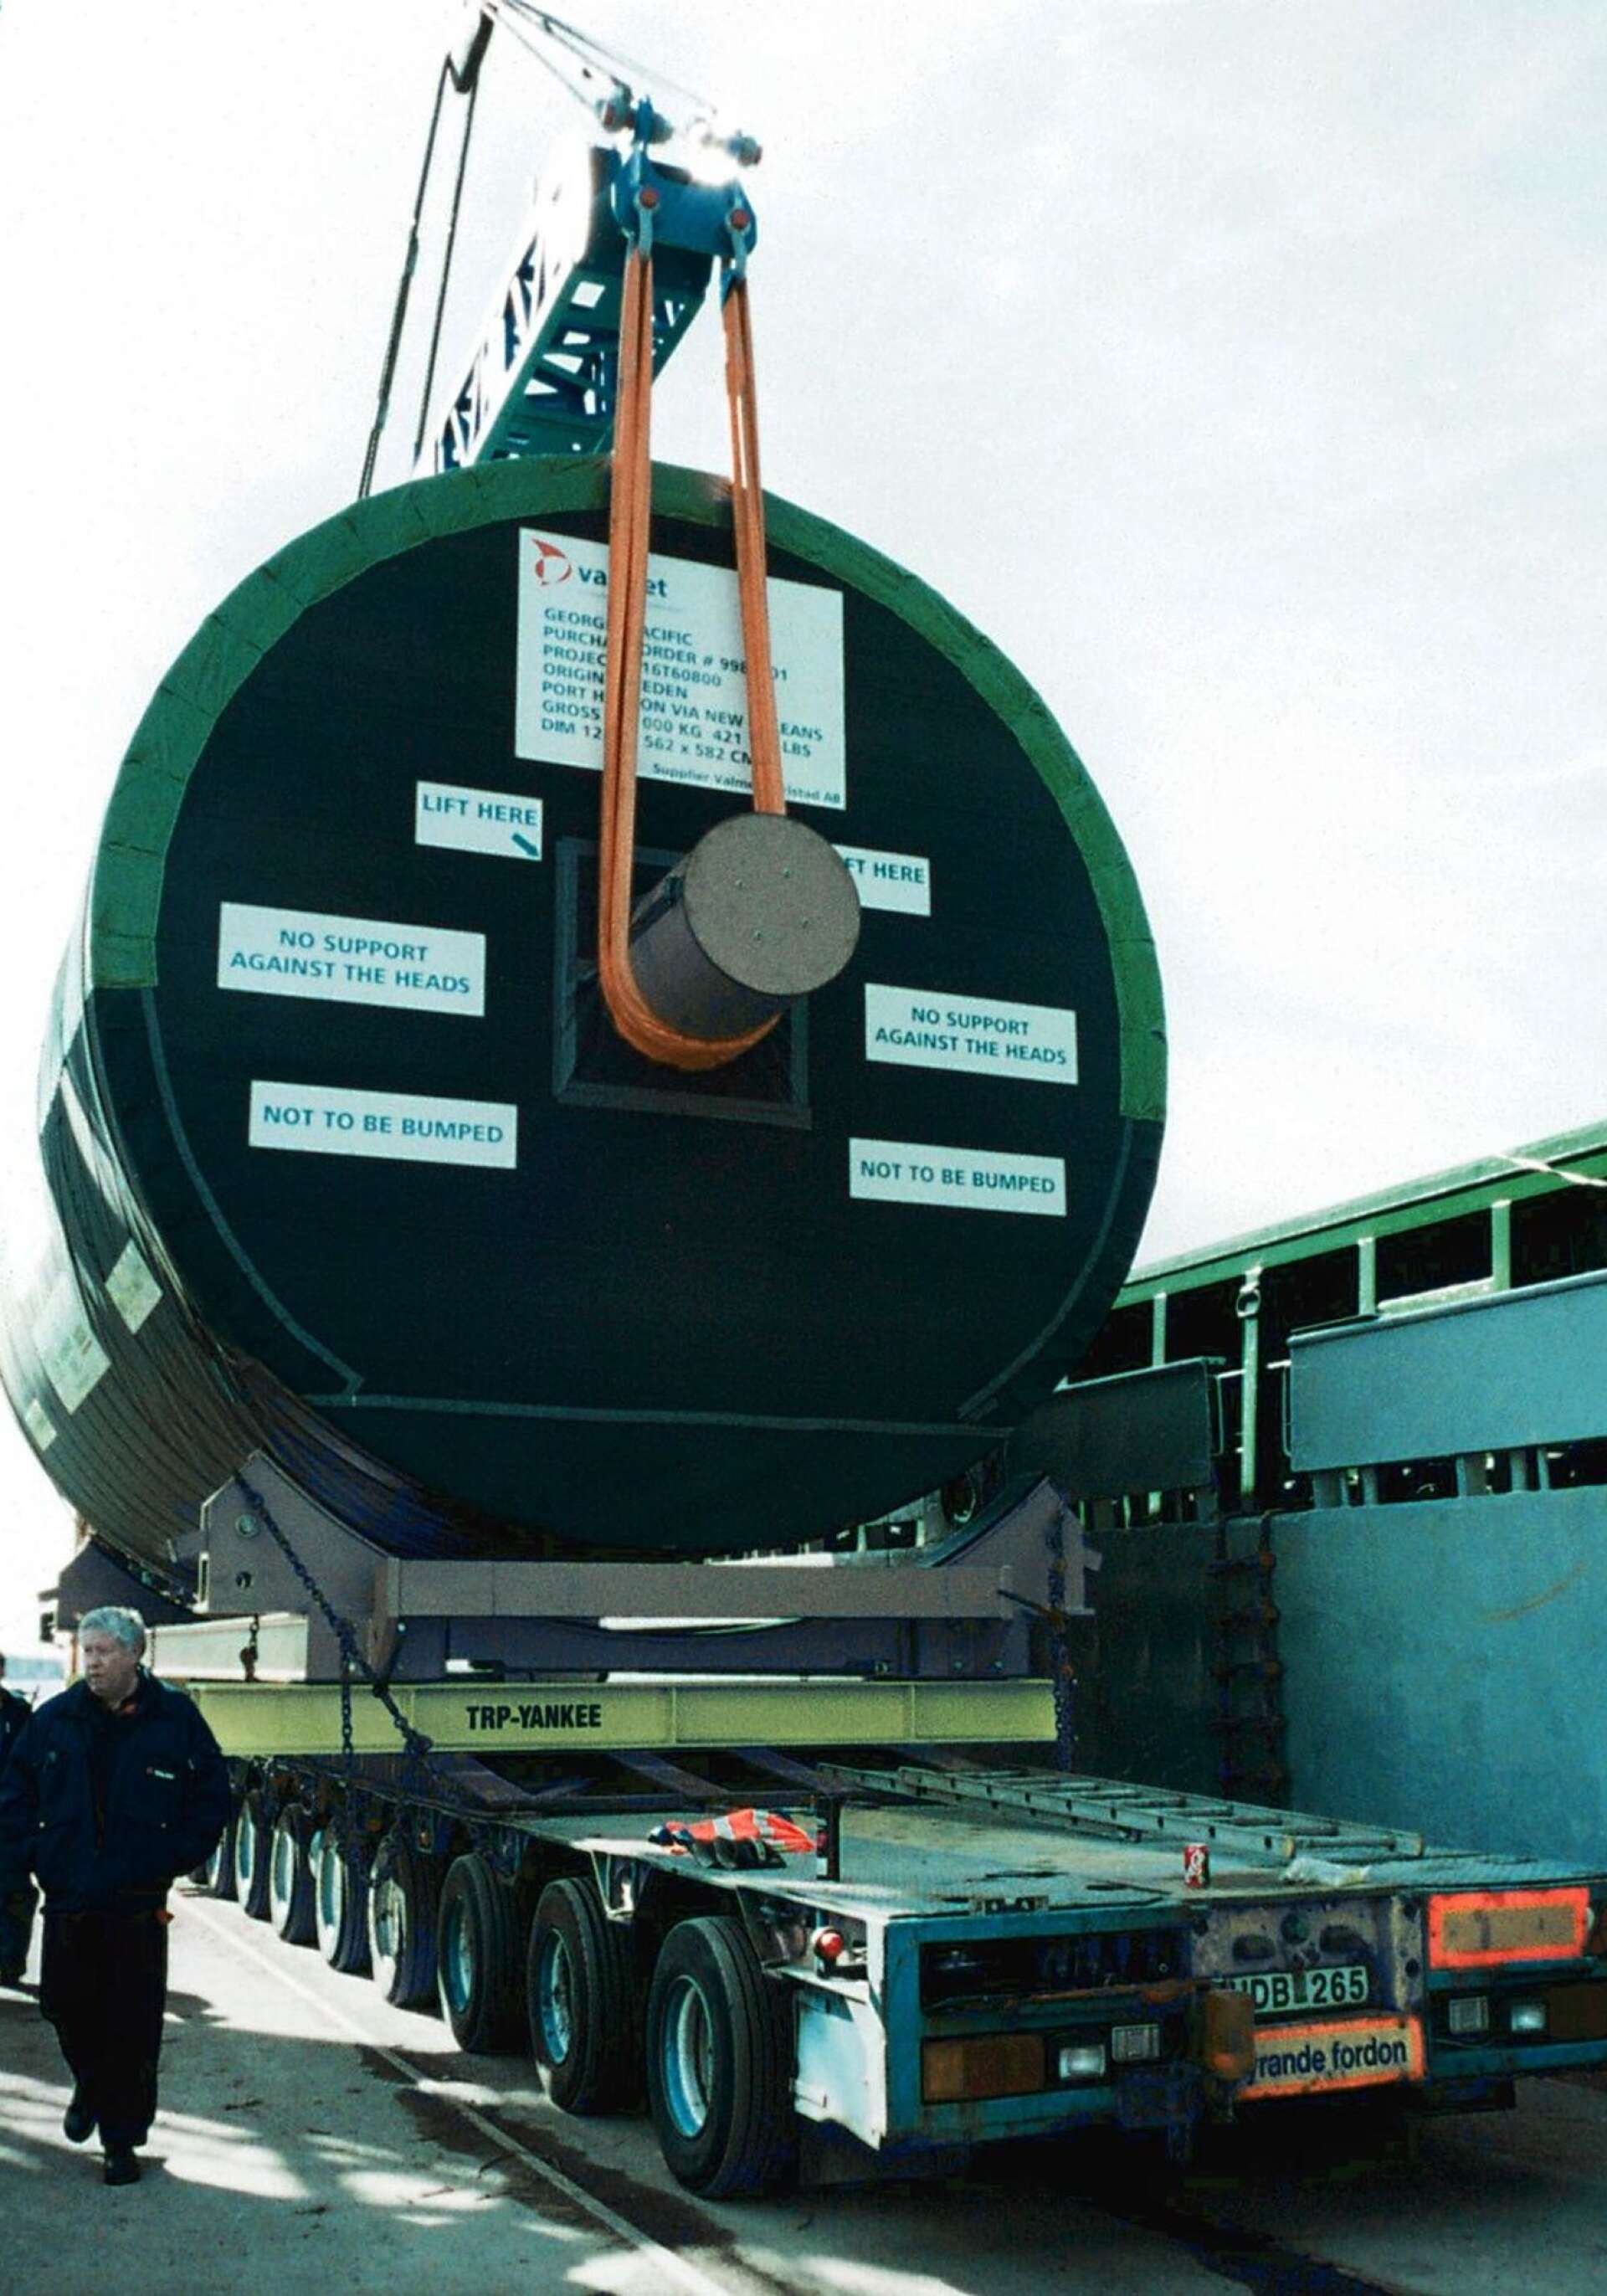 Valmets yankeecylindrar är så stora och tunga att de bara kan transporteras på fartyg. 